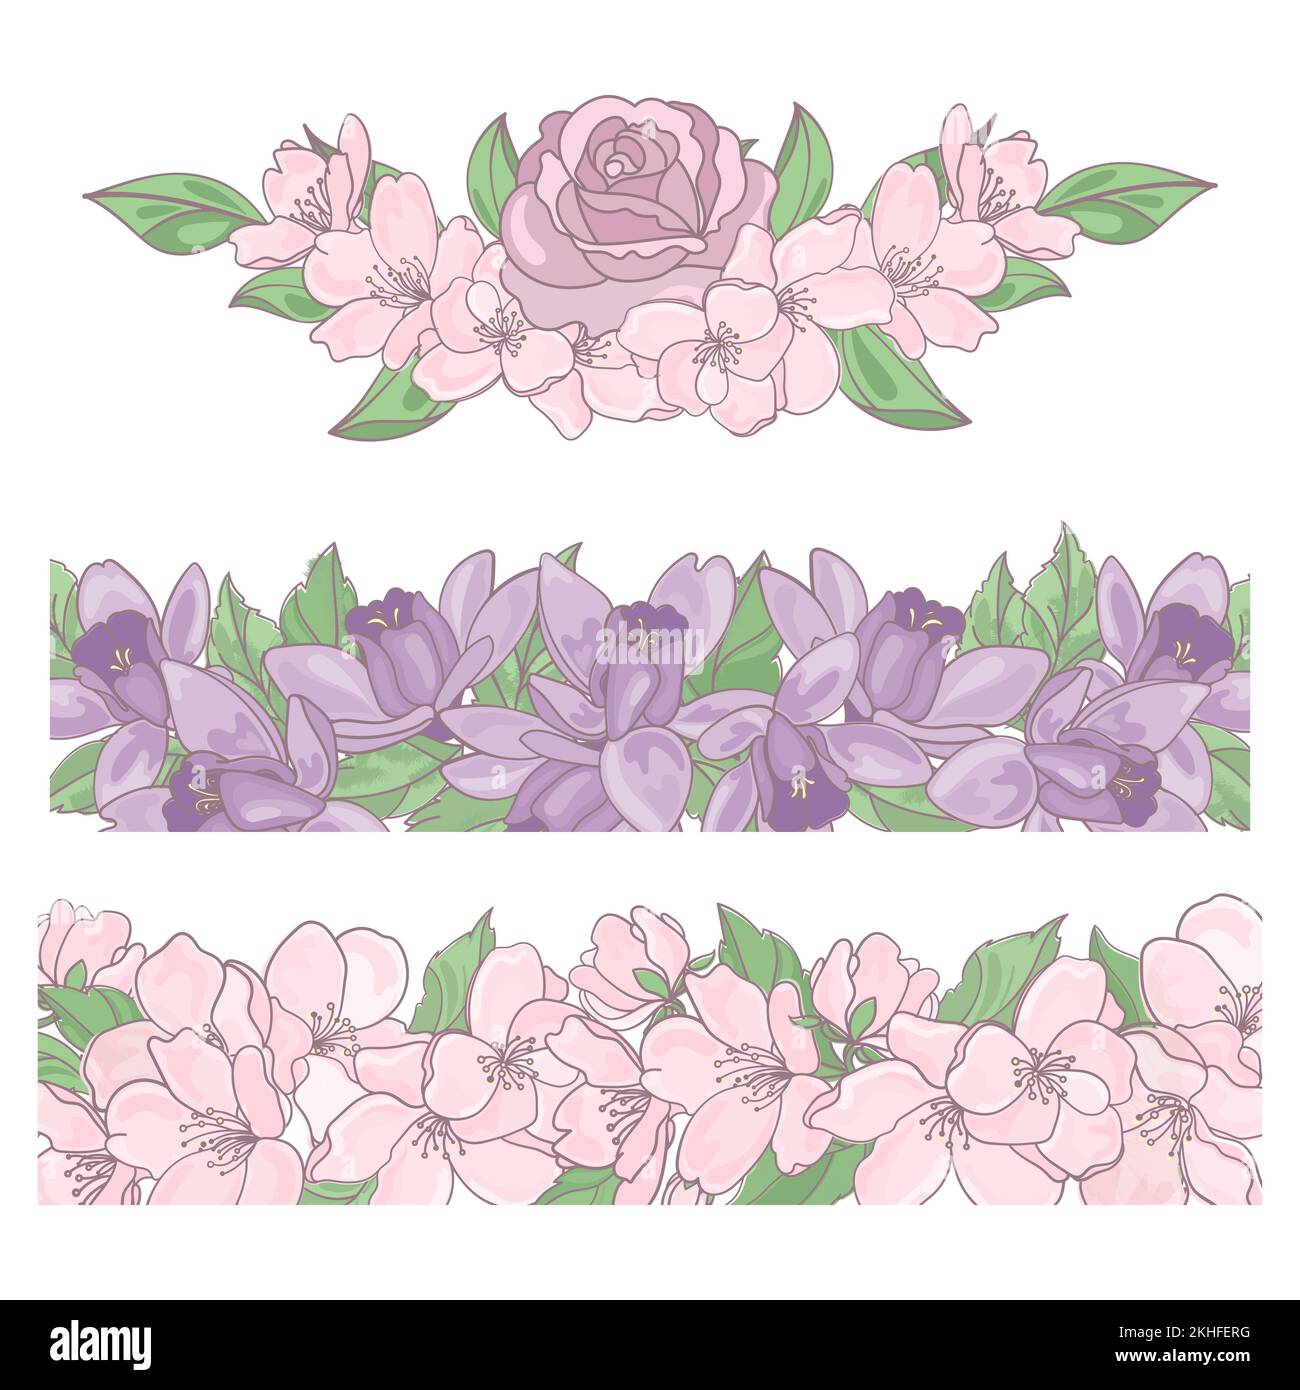 BLUMENRÄNDER Rose Aquilegia Apfelsaison Natur Frühling Dekoration Cartoon Clip Art Vektor-Illustration Set zum Drucken Stock Vektor